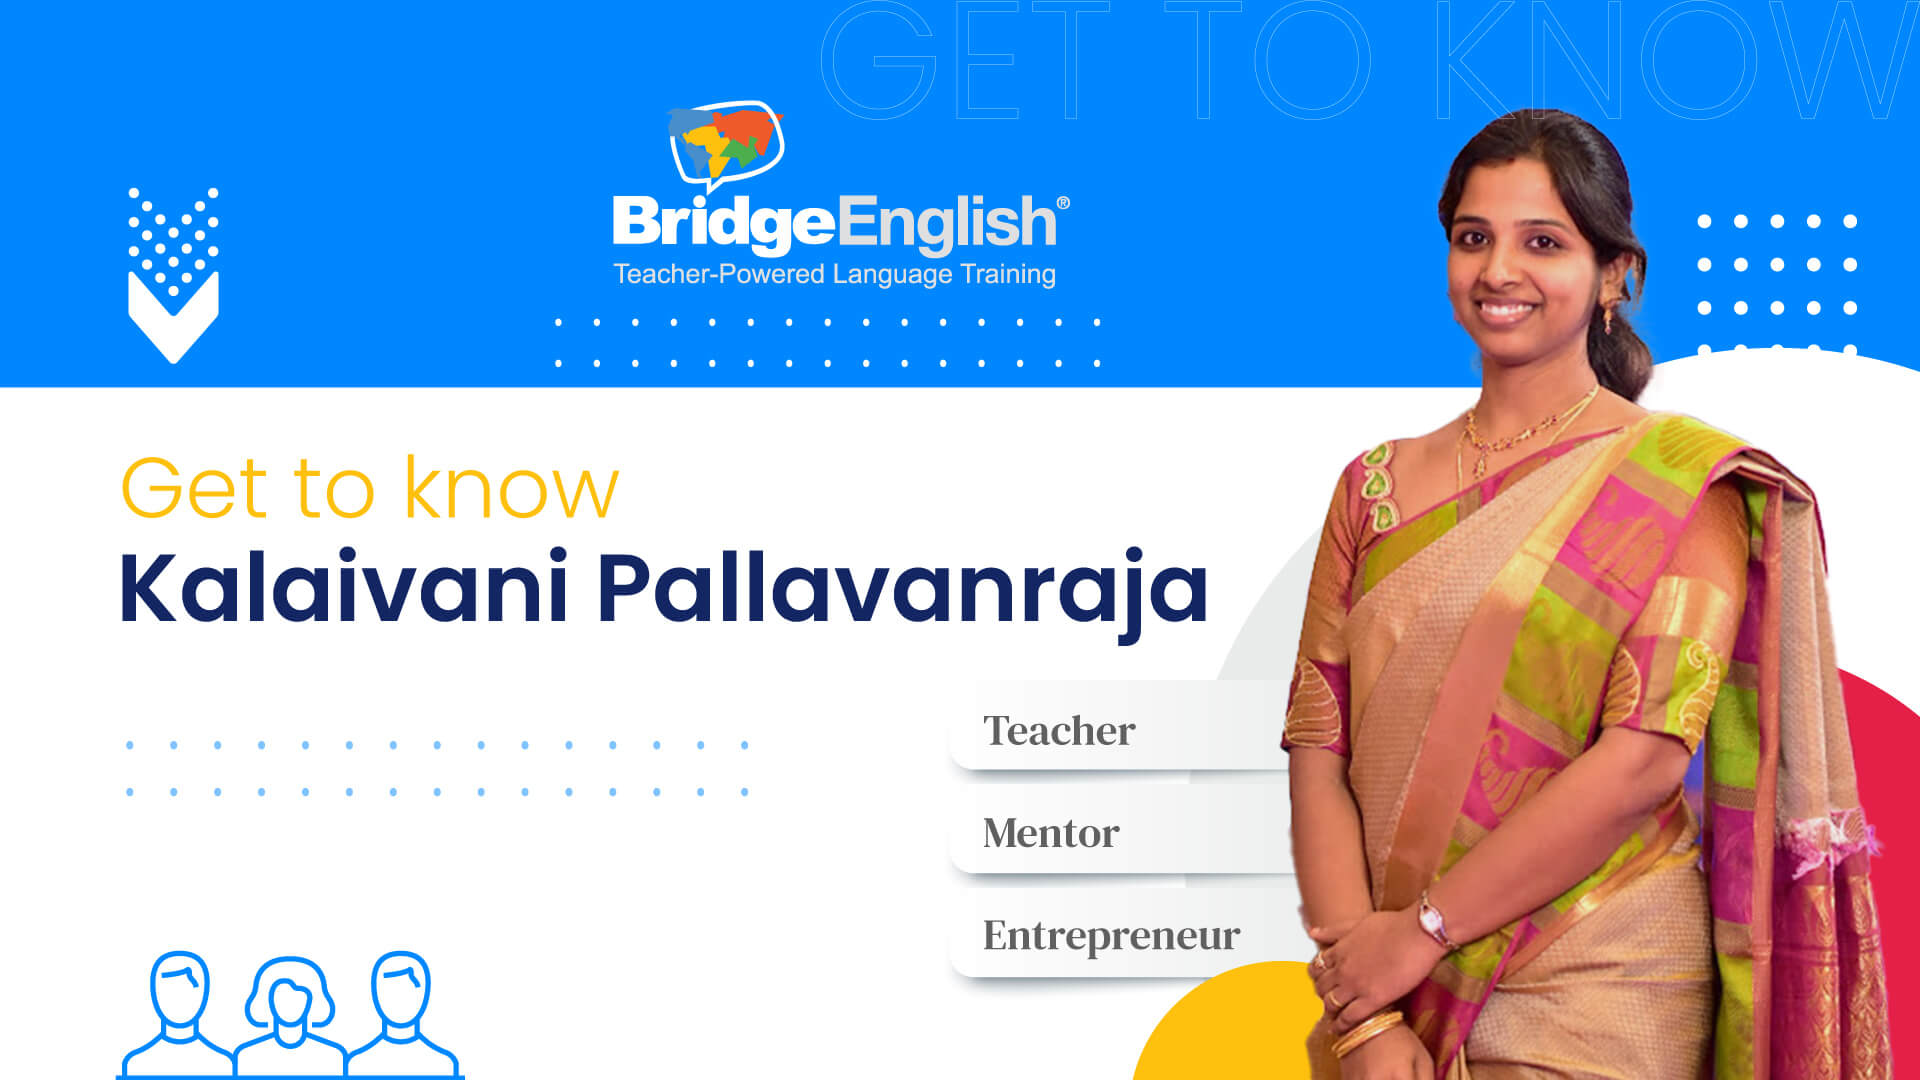 Meet Multilingual Entrepreneur Kalaivani Pallavanraja: A BridgeEnglish Teacher Born to Teach